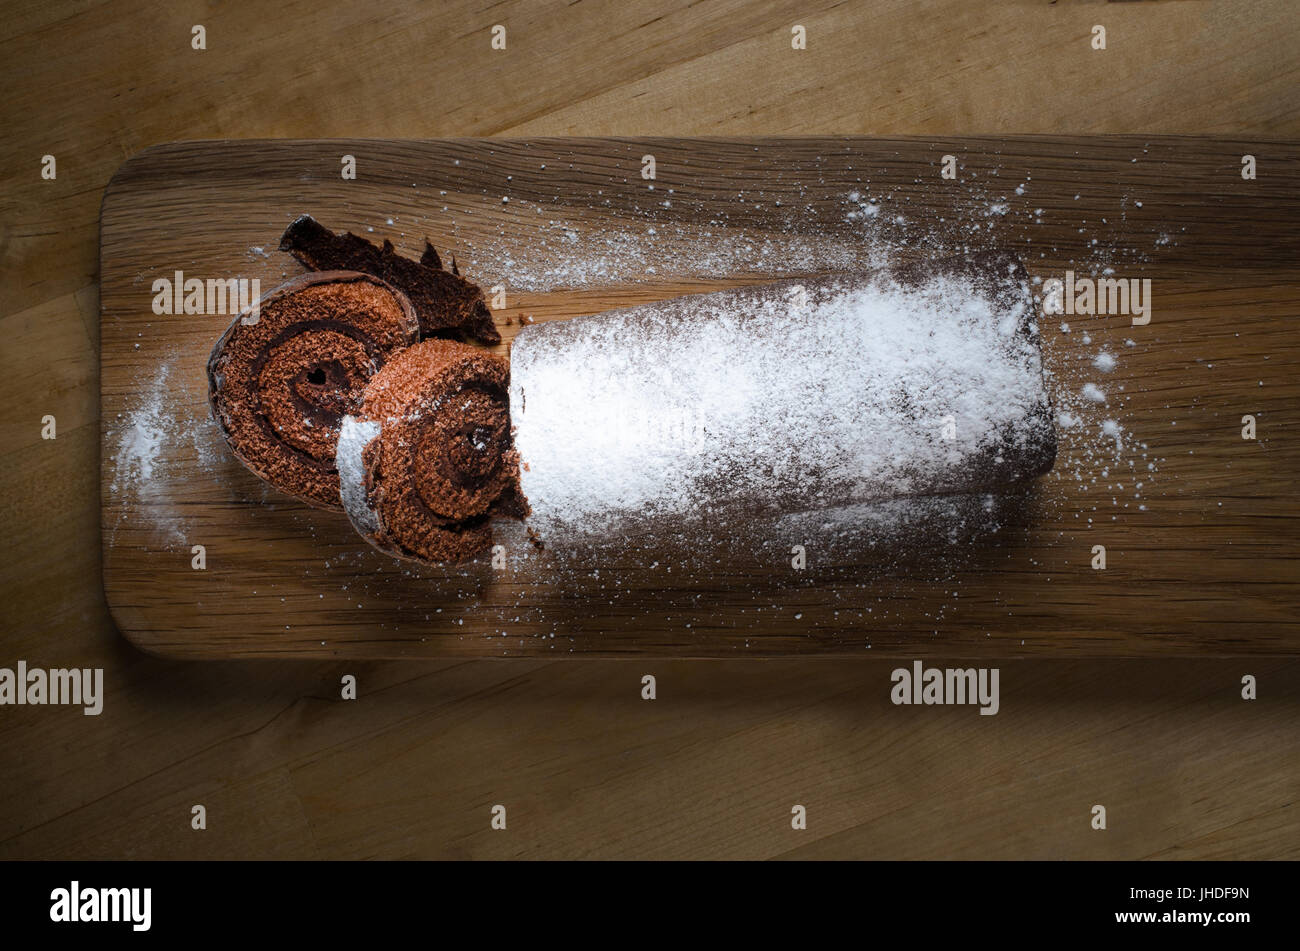 Overhead Schuss ein voller Länge Schokolade Weihnachten Yule Log oder Biskuitrolle Kuchen auf langen hölzernen Paddel Board mit weißen Puderzucker bestäubt. Stockfoto